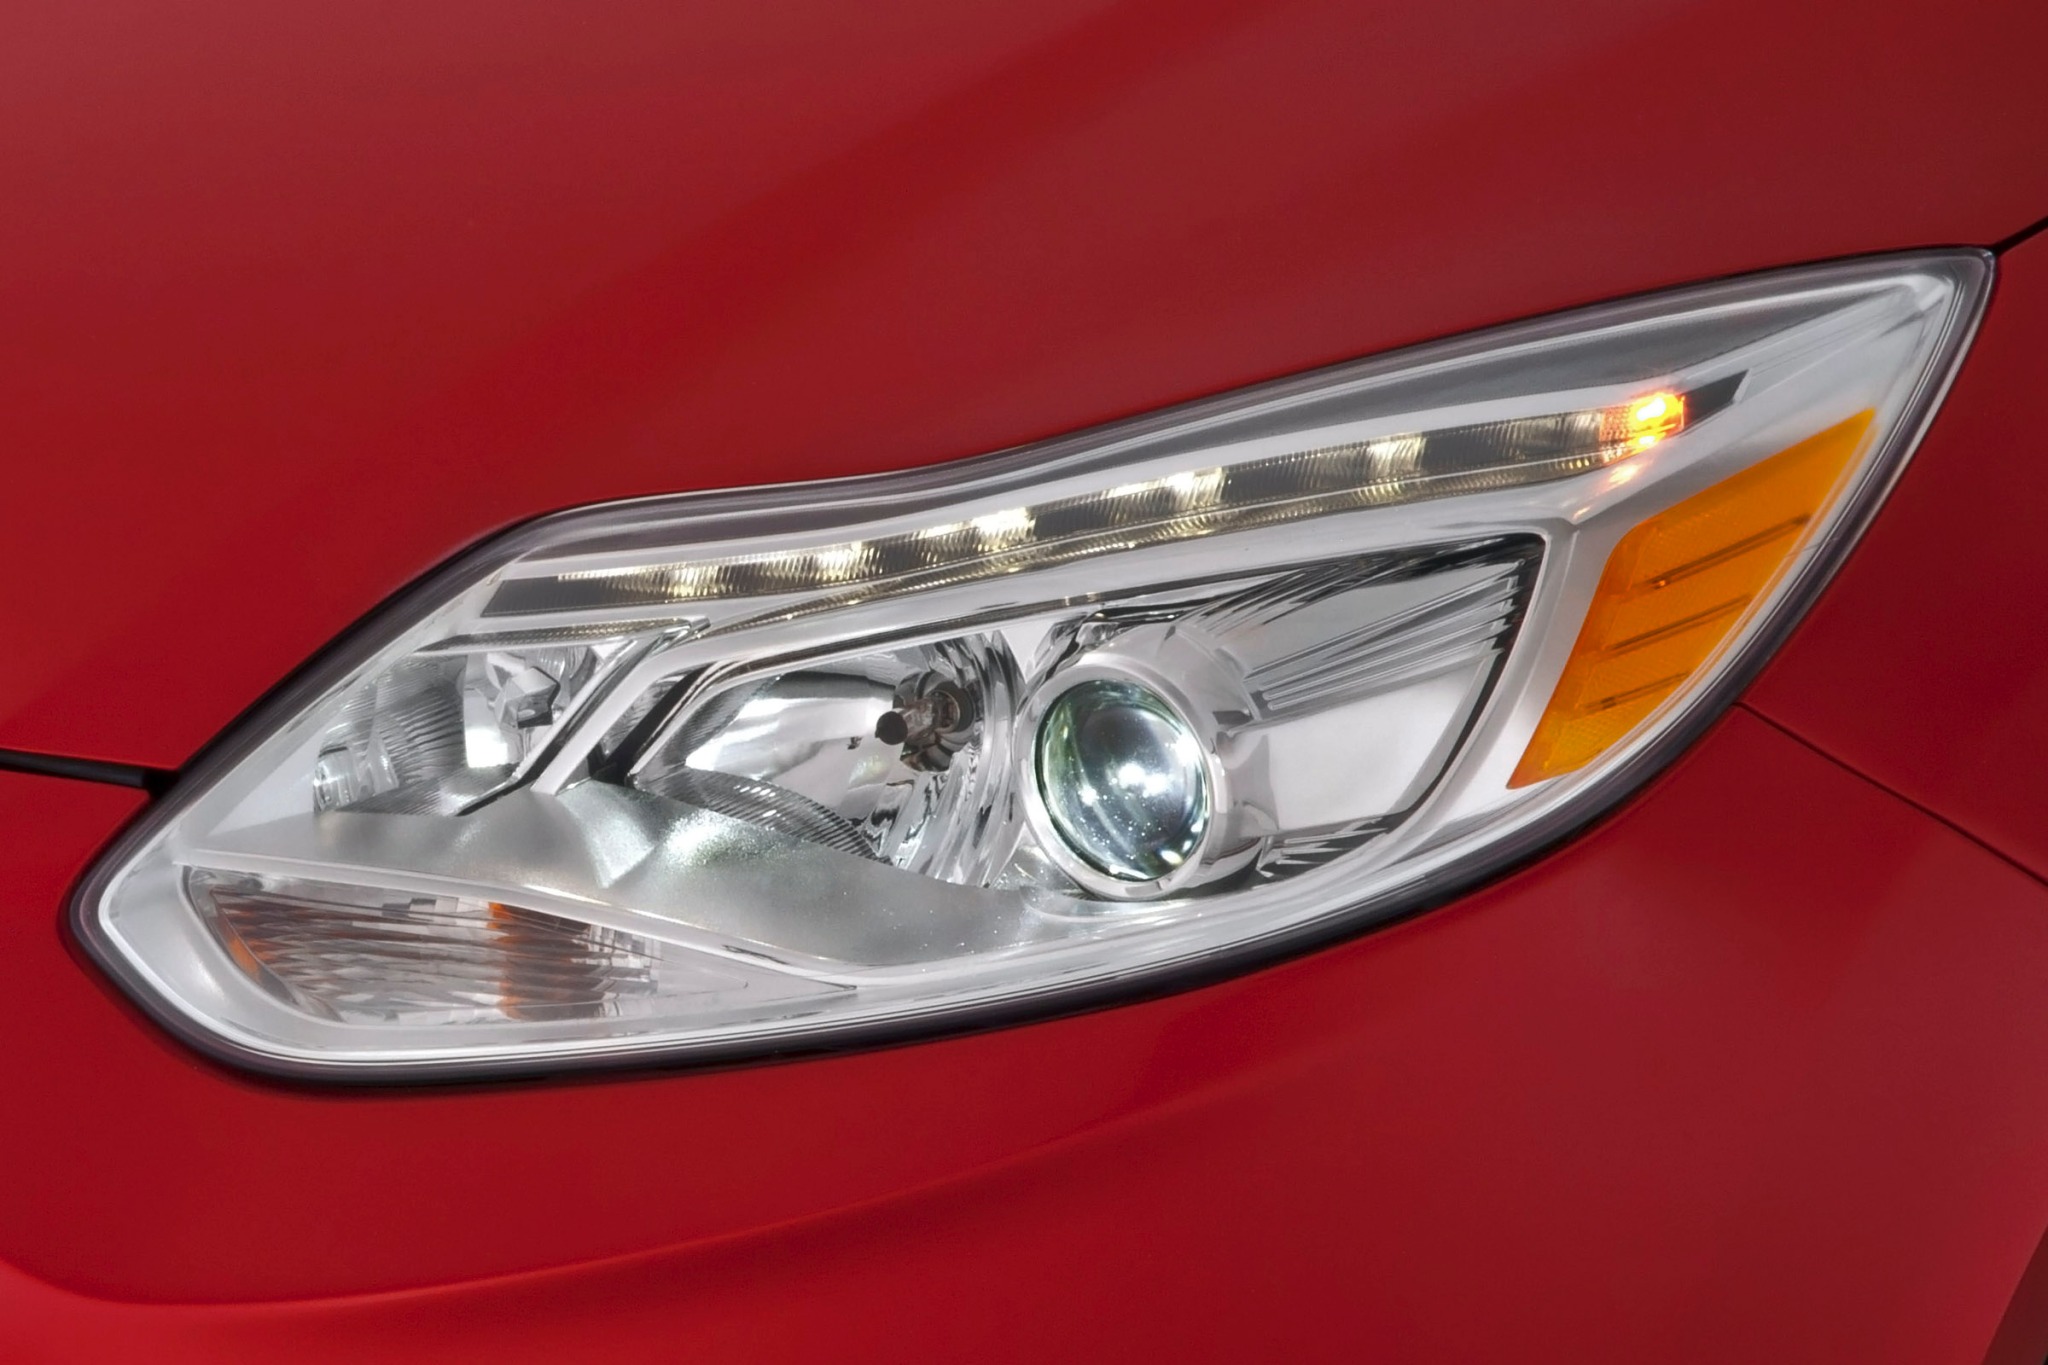 2015 Ford Focus Electric 4dr Hatchback Headlamp Detail